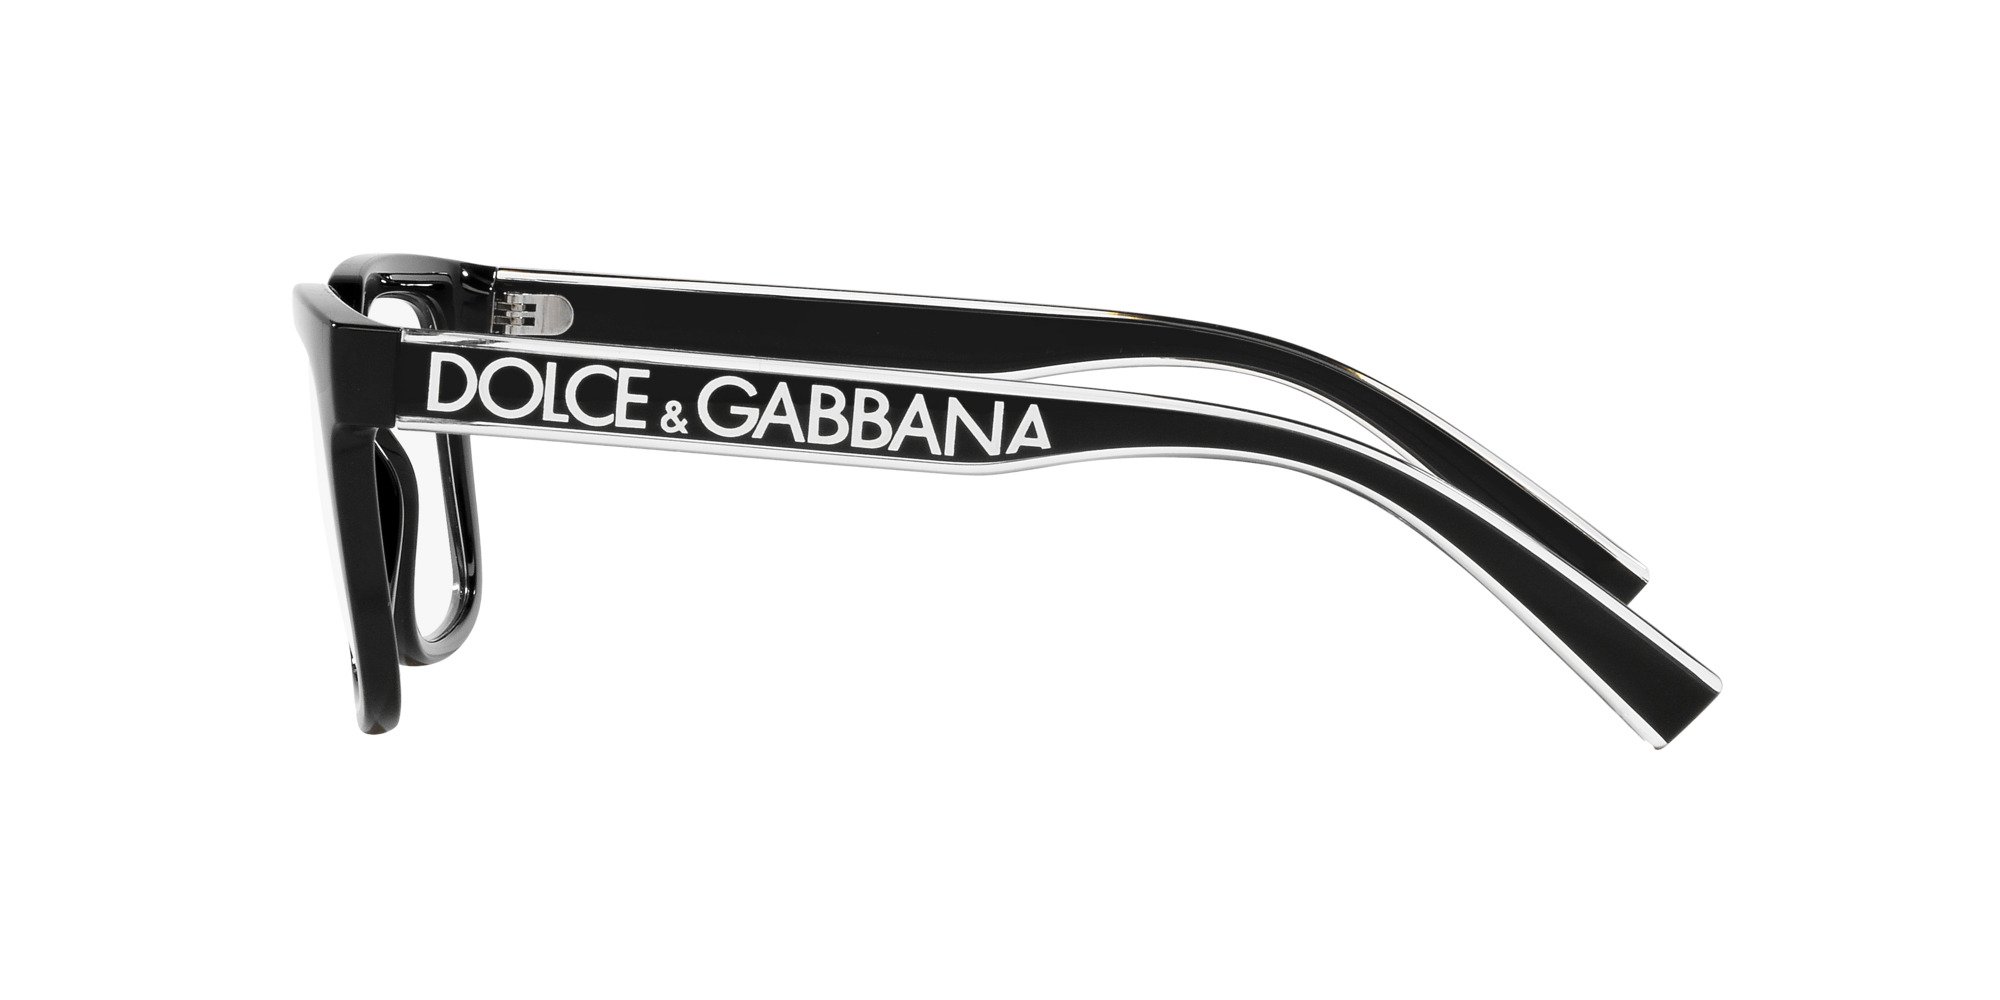 Das Bild zeigt die Korrektionsbrille DG5101 501 von der Marke D&G in schwarz.